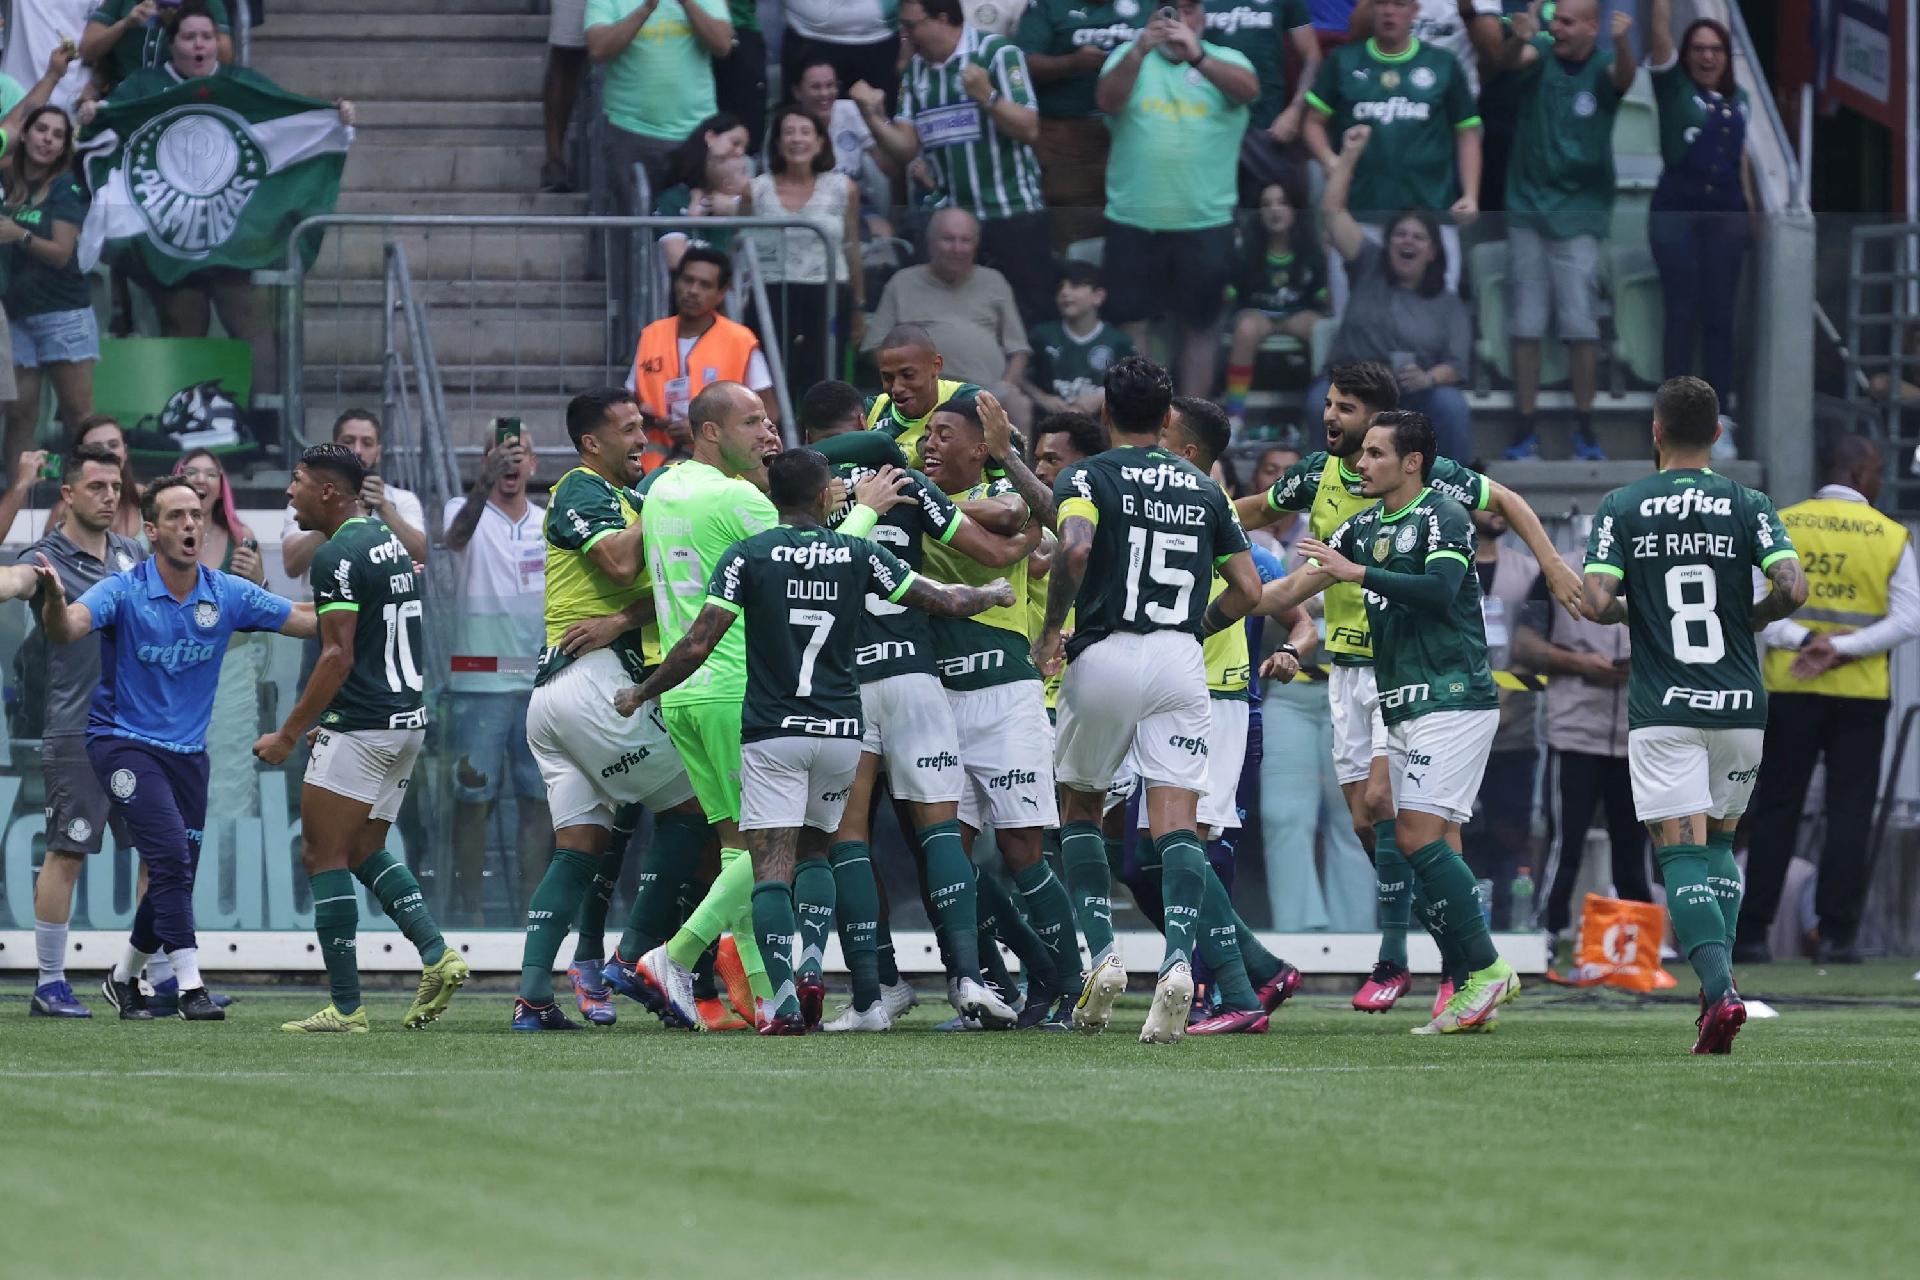 Palmeiras faz 1 a 0 no Ituano e vai à final do Paulistão